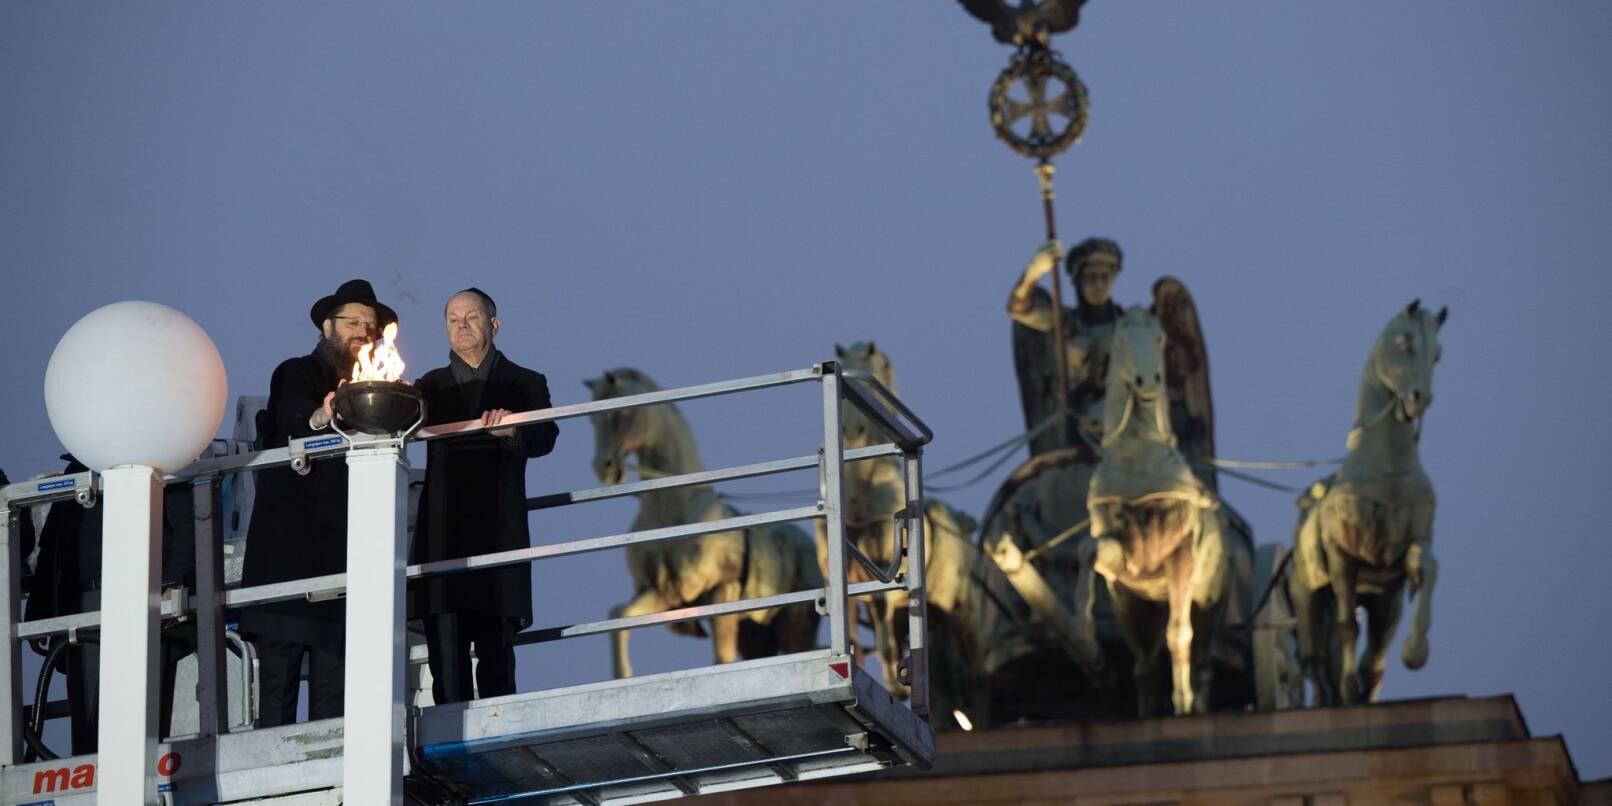 Rabbiner Yehuda Teichtal (l.) und Bundeskanzler Olaf Scholz zünden beim traditionellen zentralen Chanukka-Lichterzünden am Brandenburger Tor in Berlin ein Licht an.